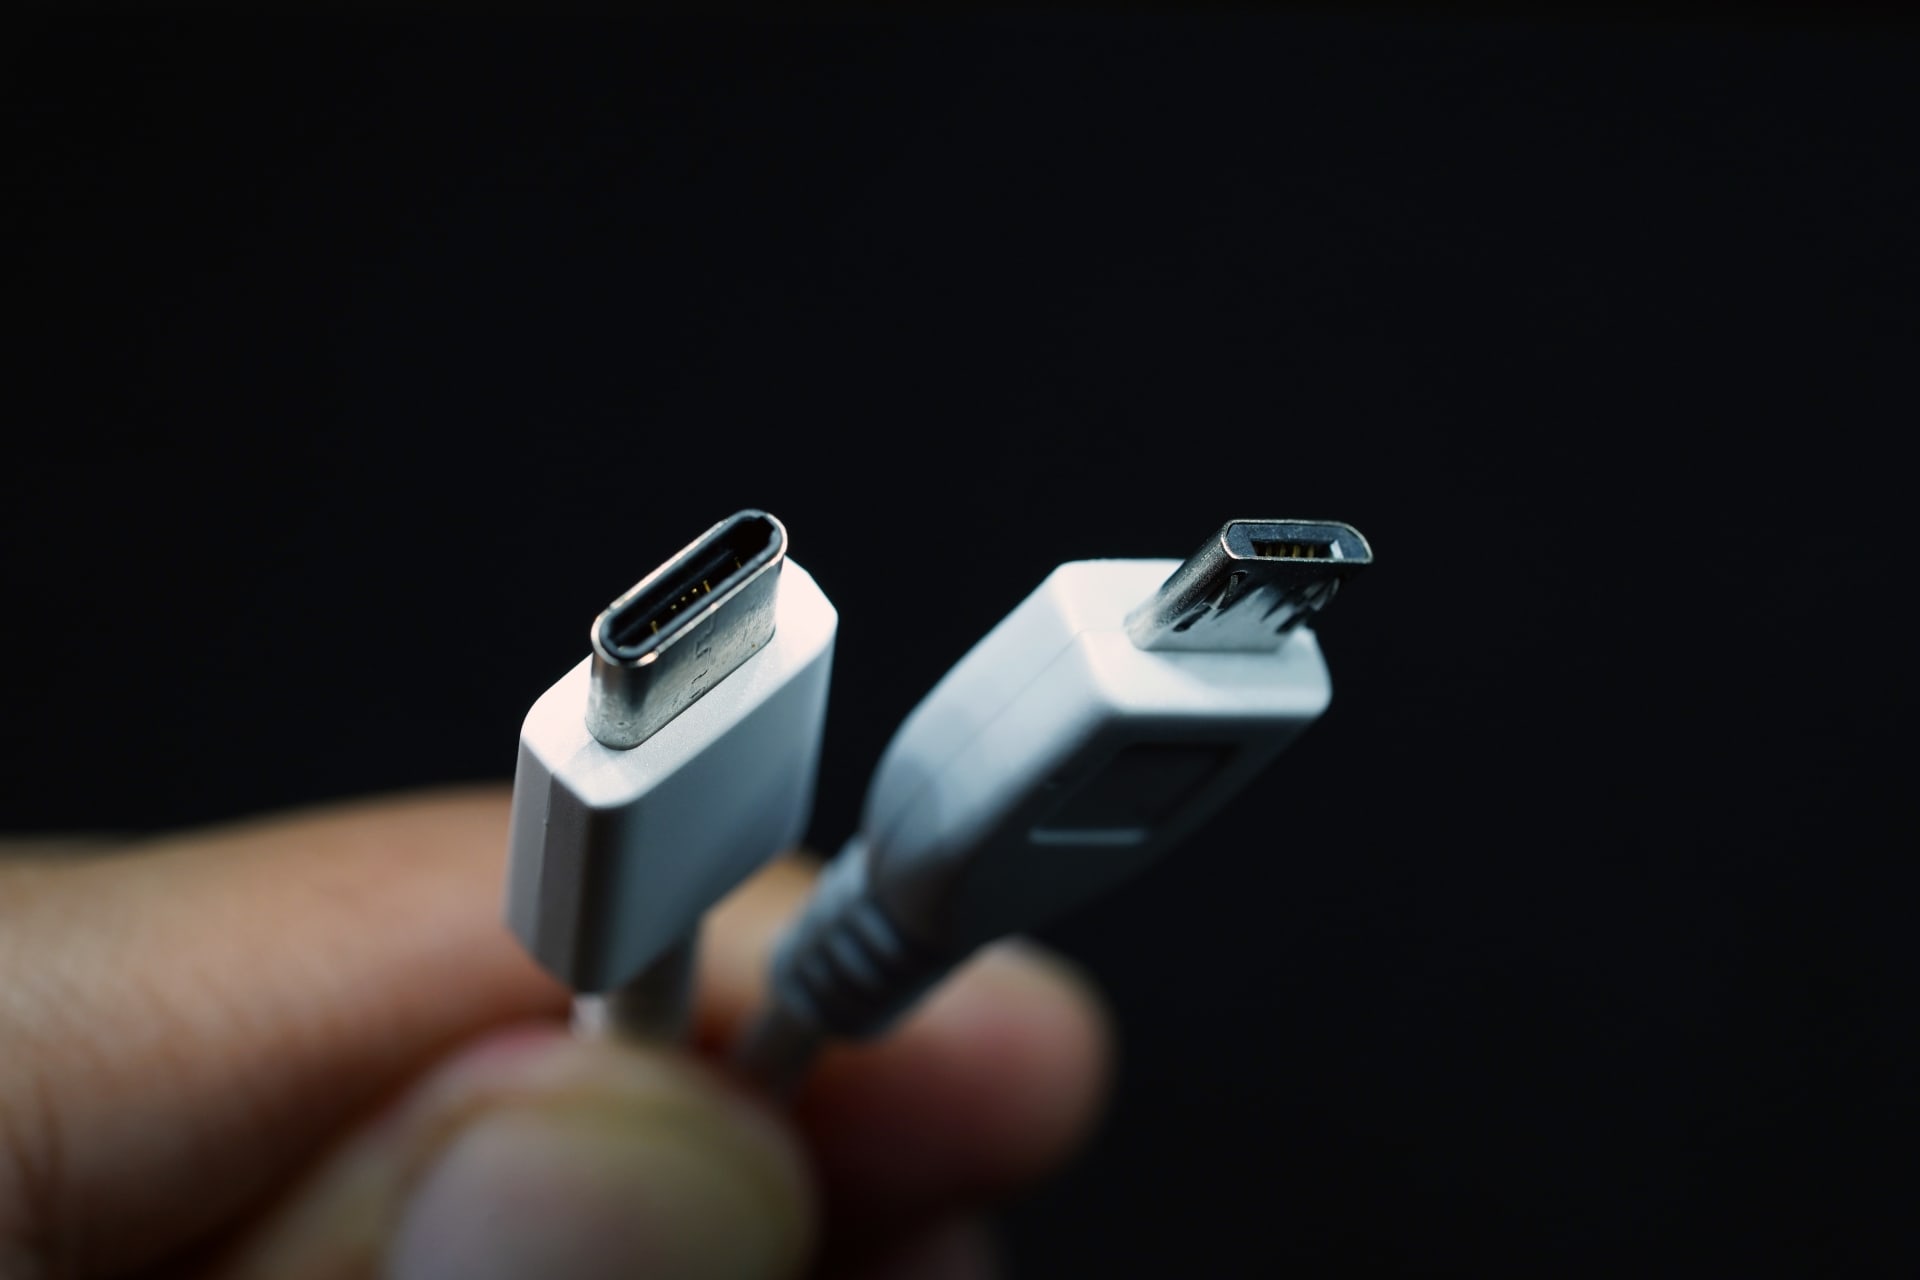 USB-C kabelu už nová zařízení neutečou, budou standardem.